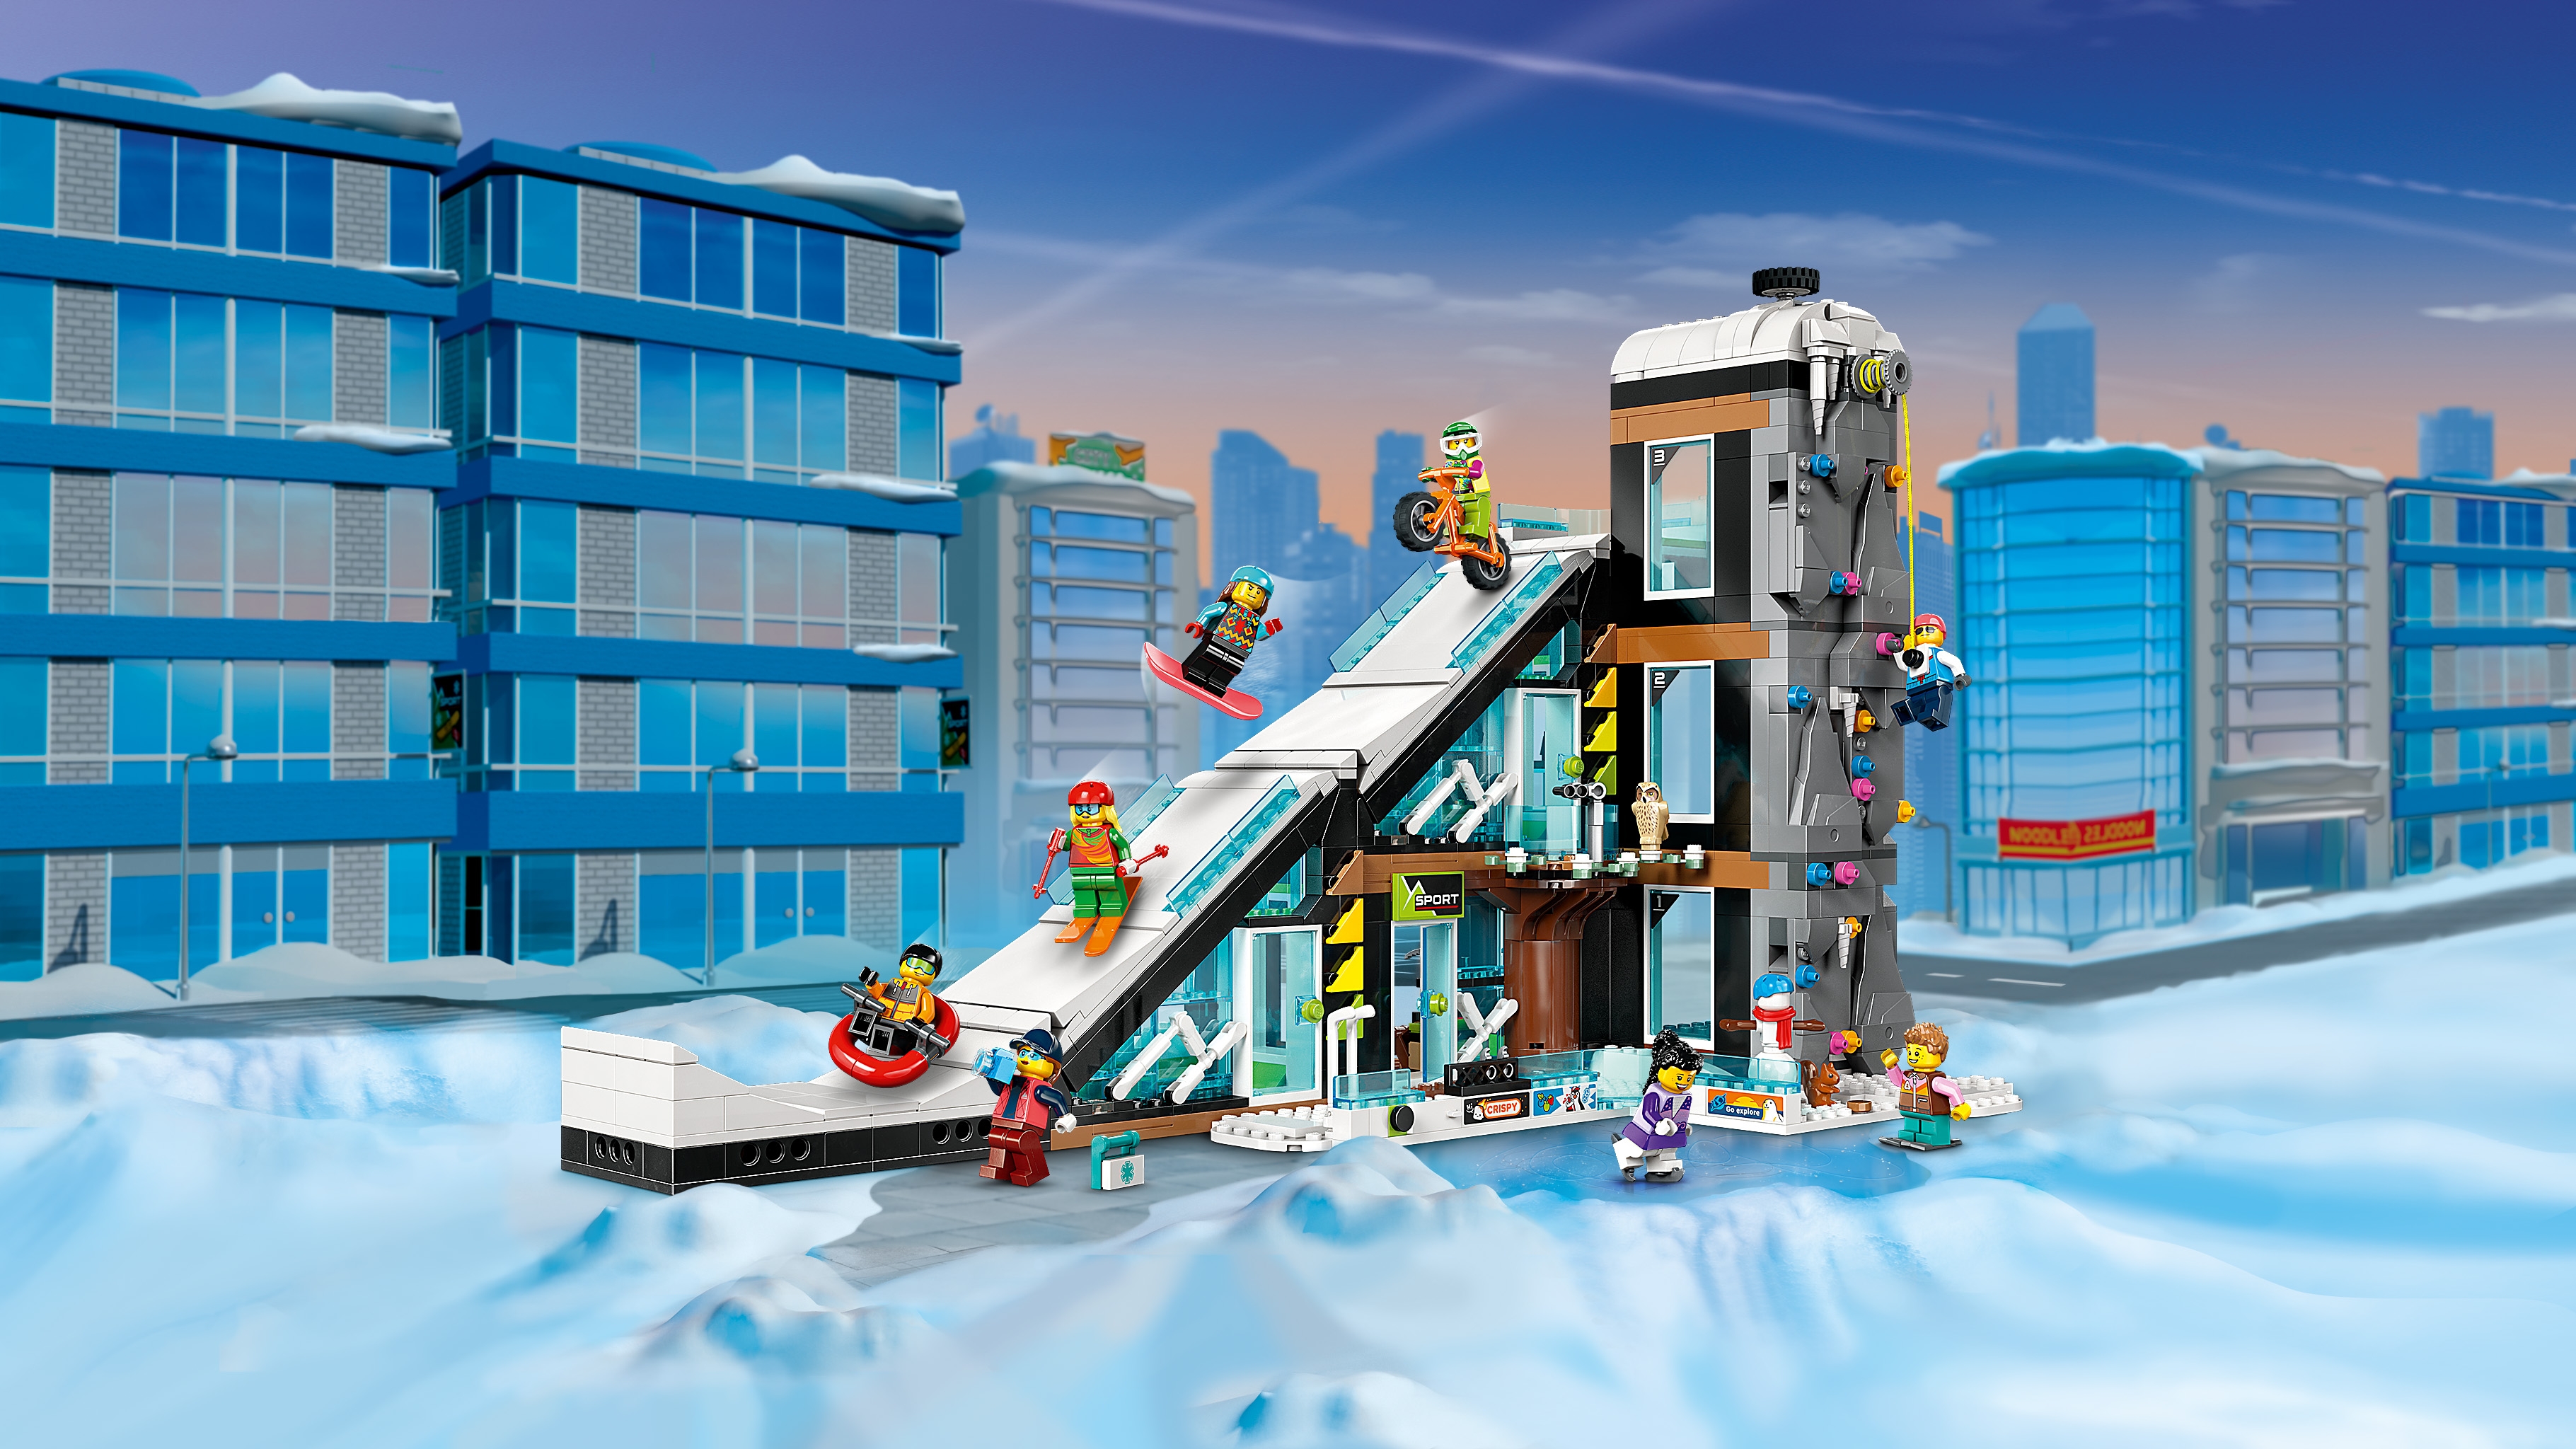 スノースポーツセンター - ビデオ - LEGO.comキッズ